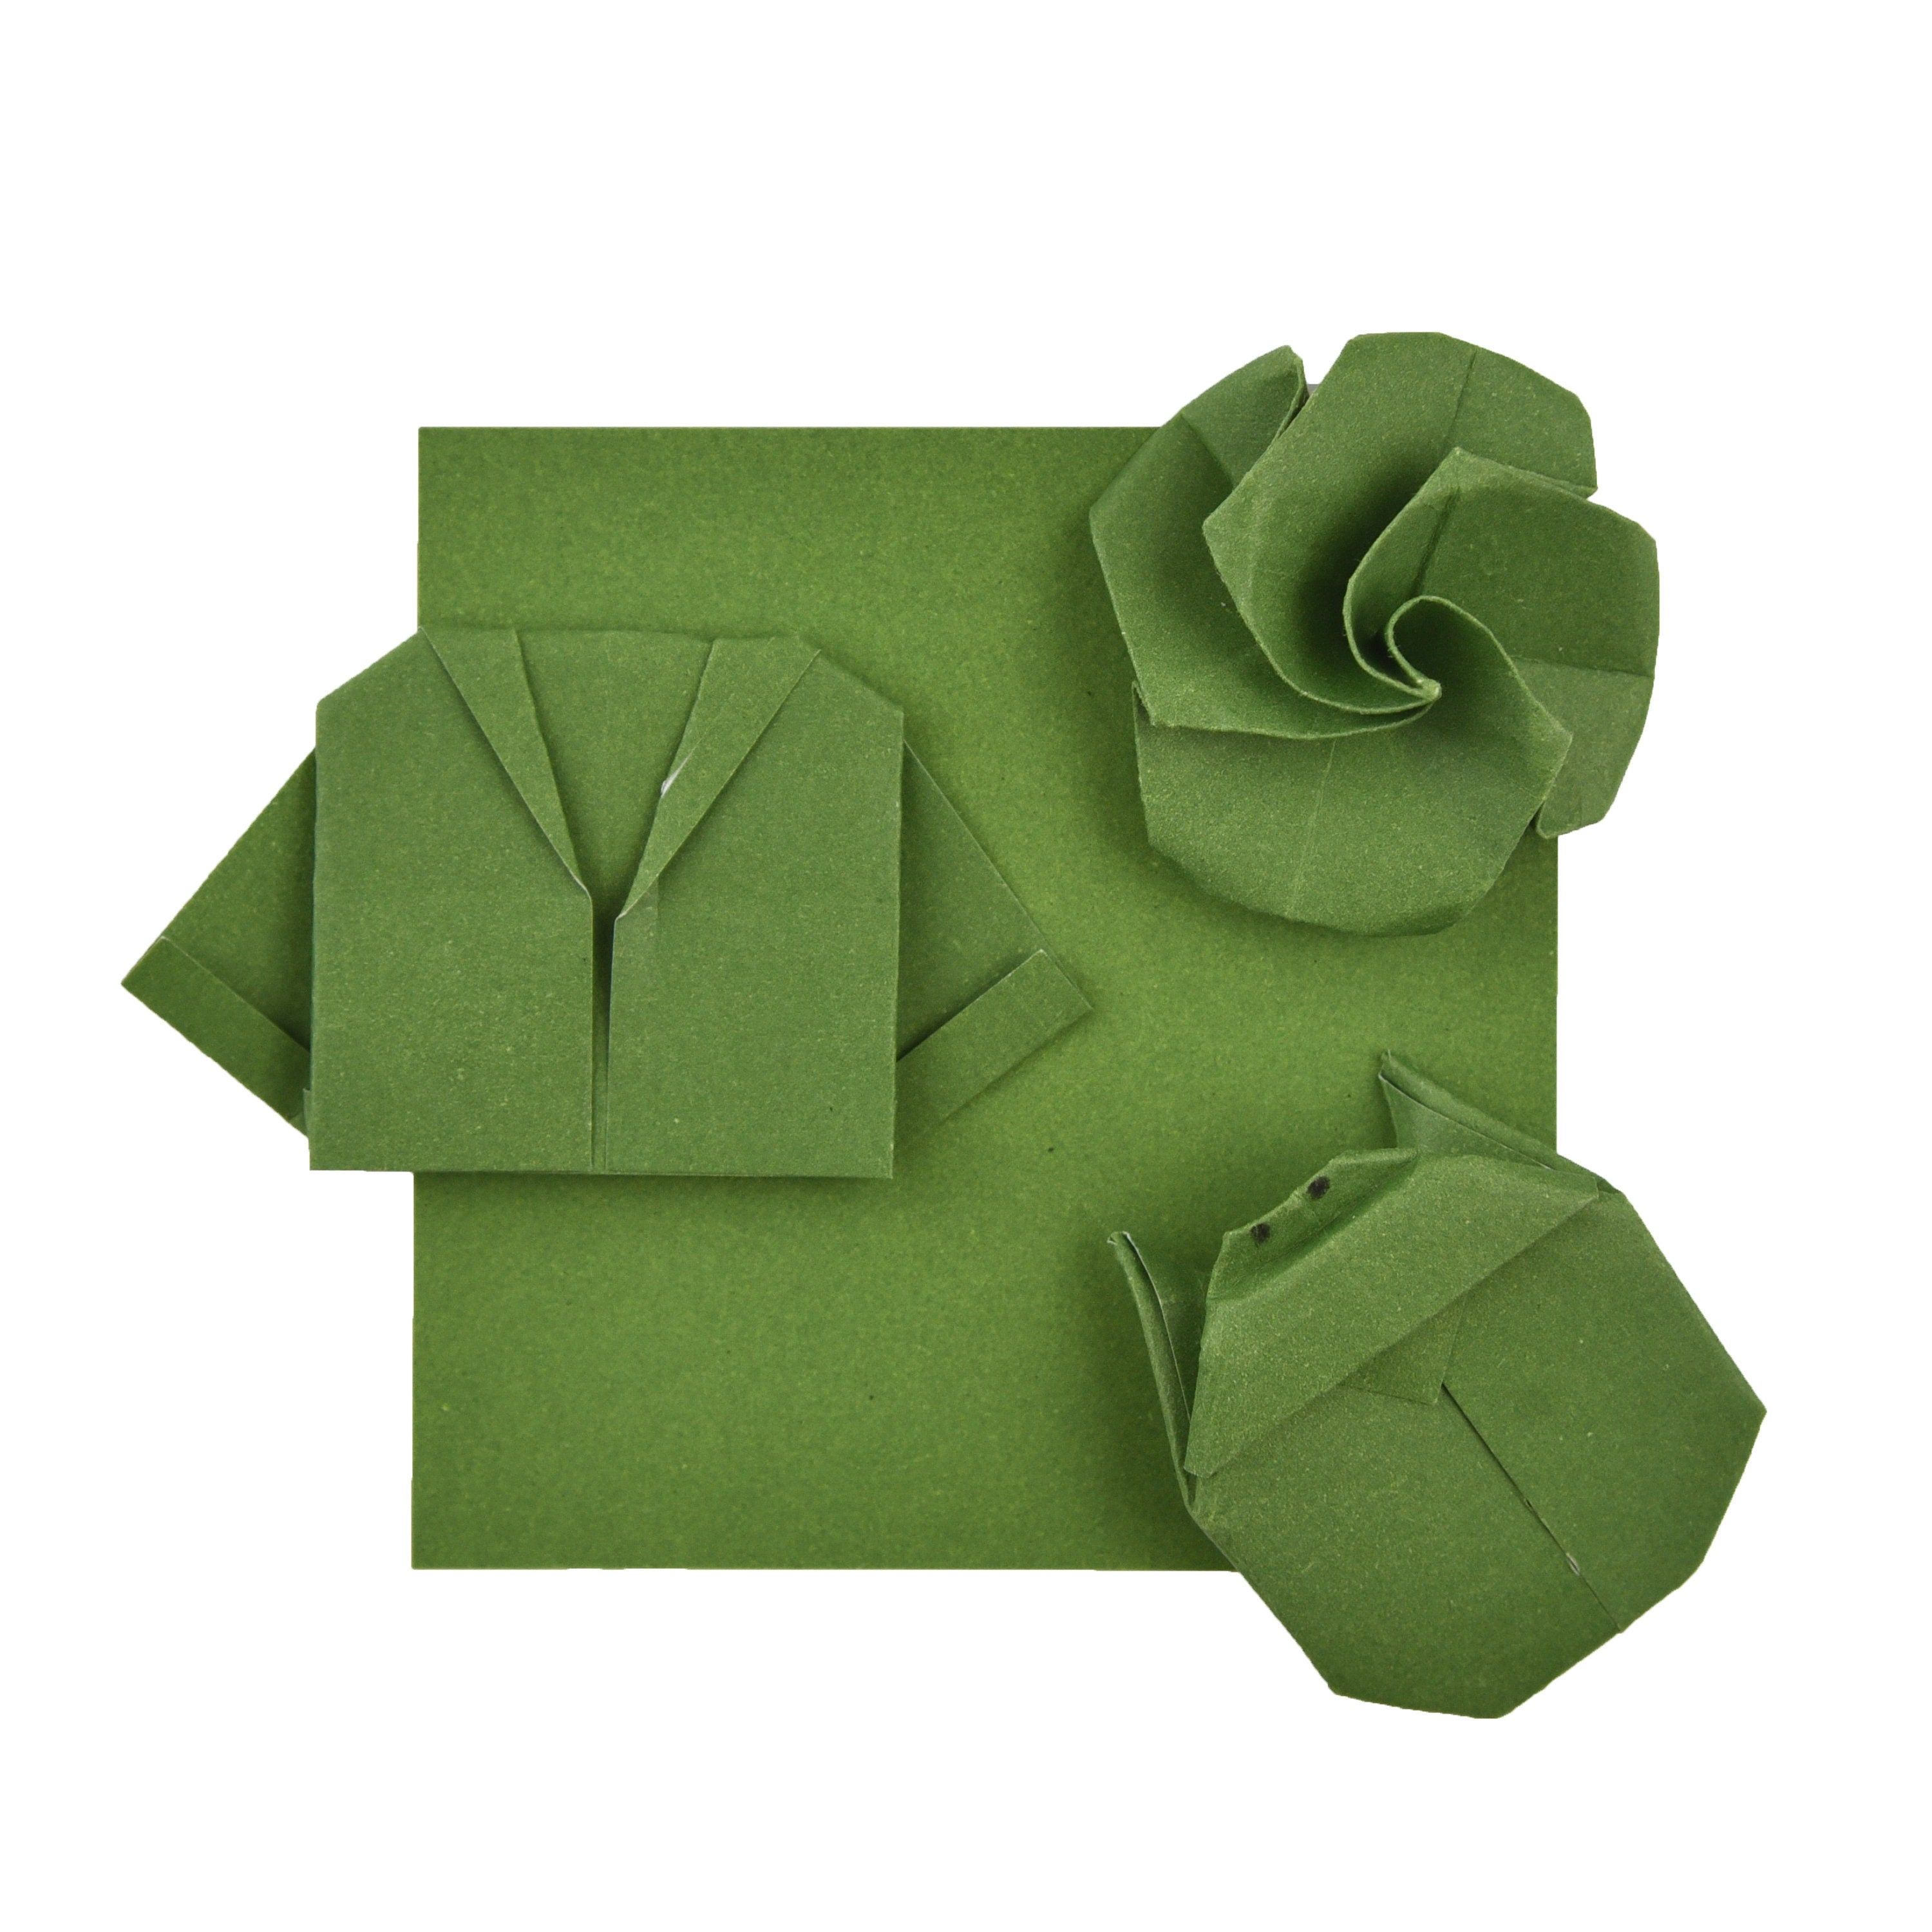 100 Hojas de Papel Origami - 3x3 pulgadas - Paquete de Papel Cuadrado para Plegar, Grullas de Origami y Decoración - S23